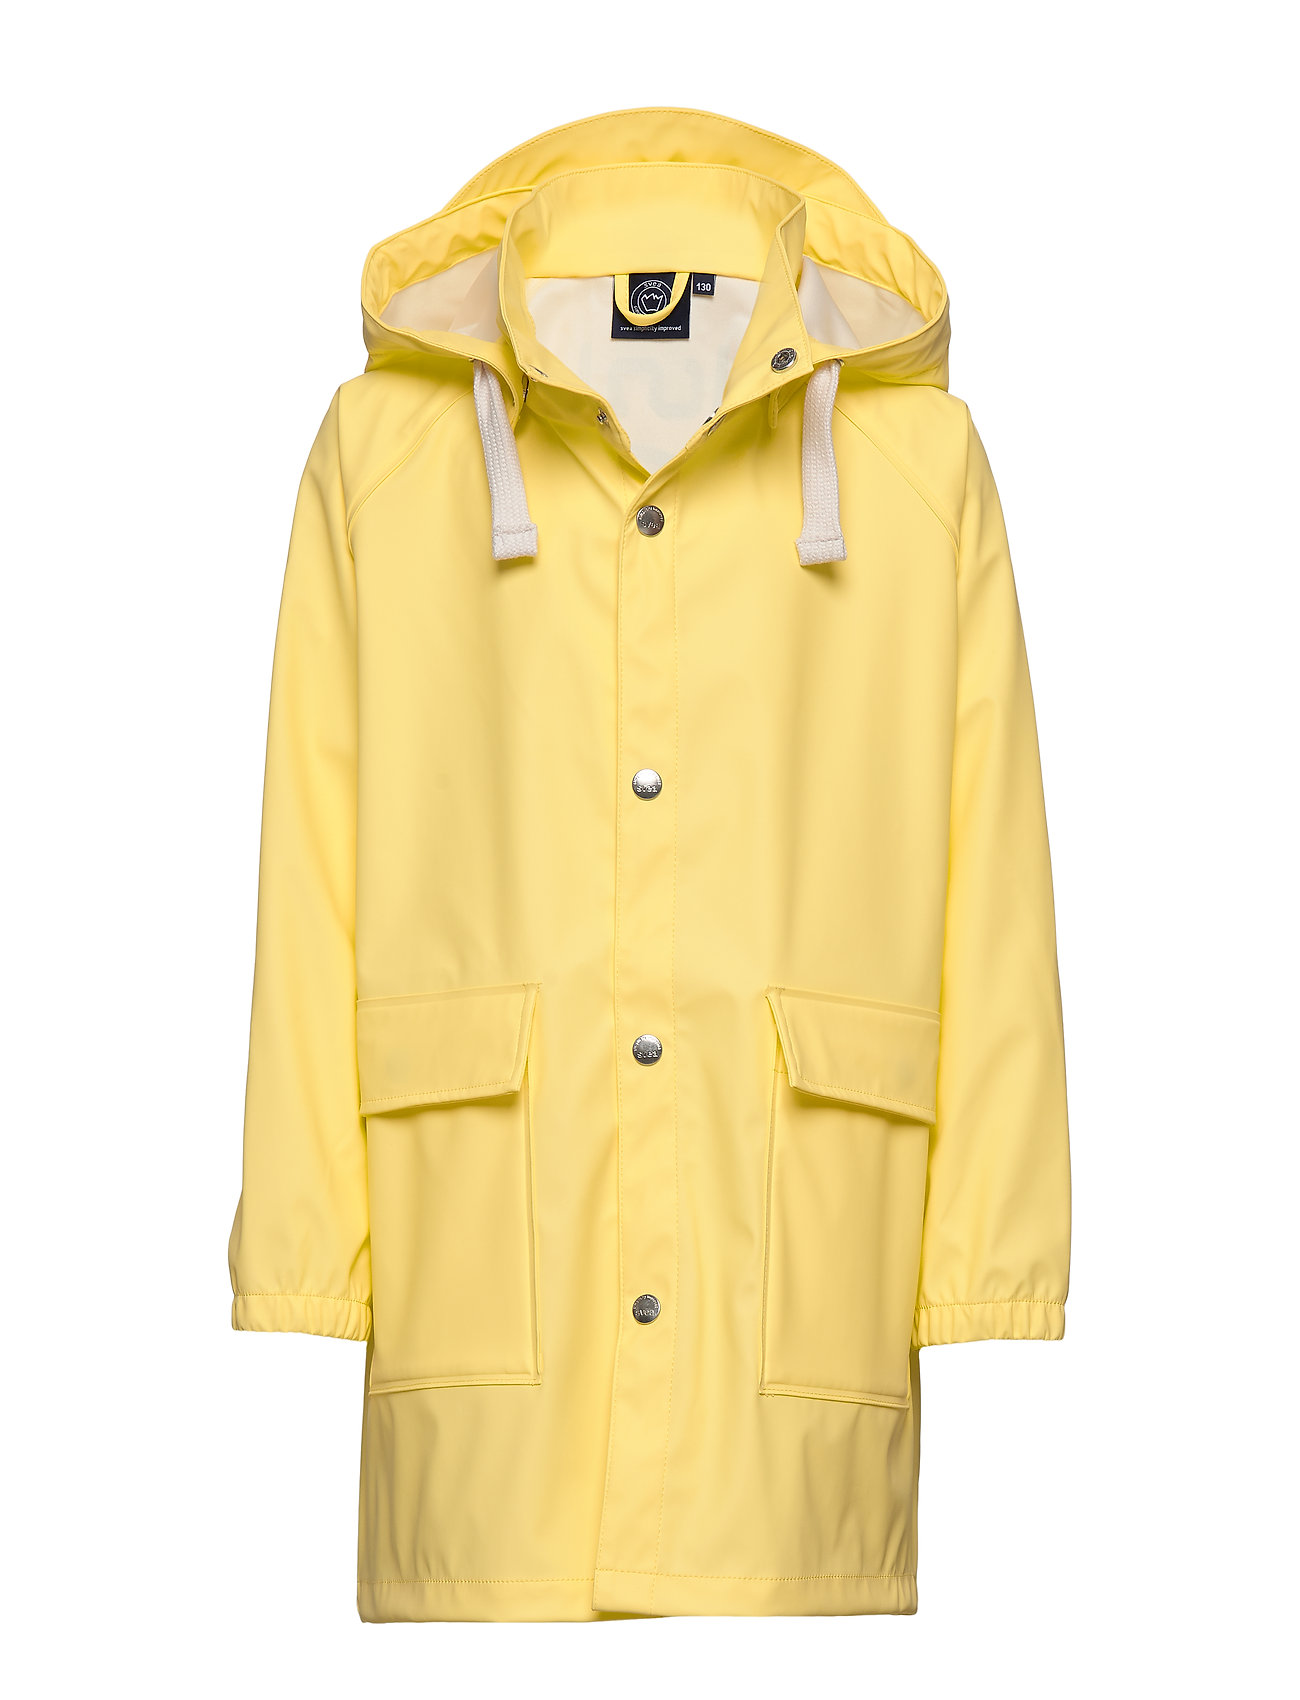 K. Love Print Rain Jacket Outerwear Rainwear Jackets Keltainen Svea